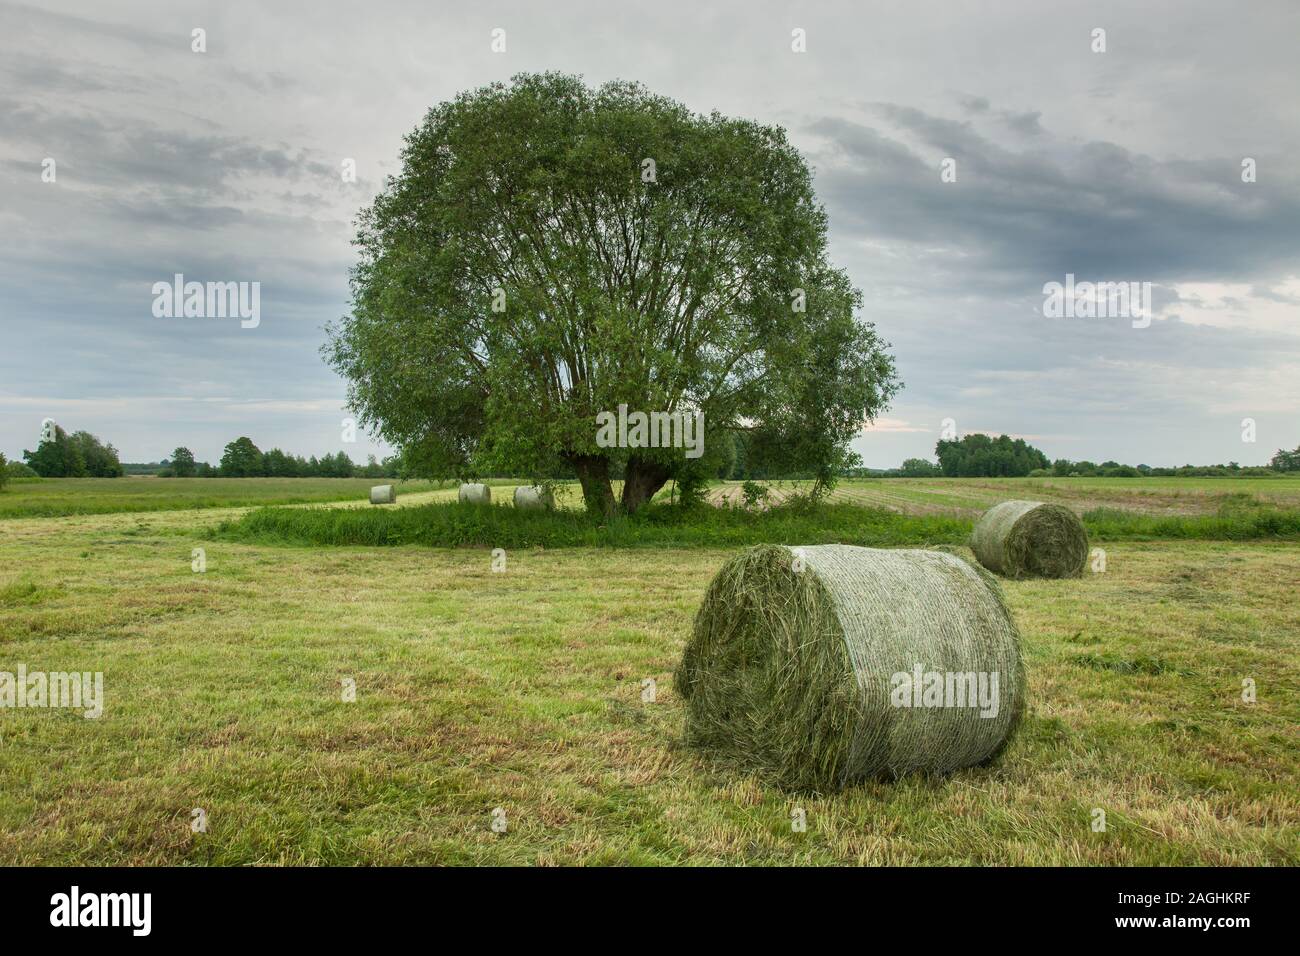 Fardos de pasto tumbado en una pradera segada, grandes árboles y nubes grises en el cielo Foto de stock